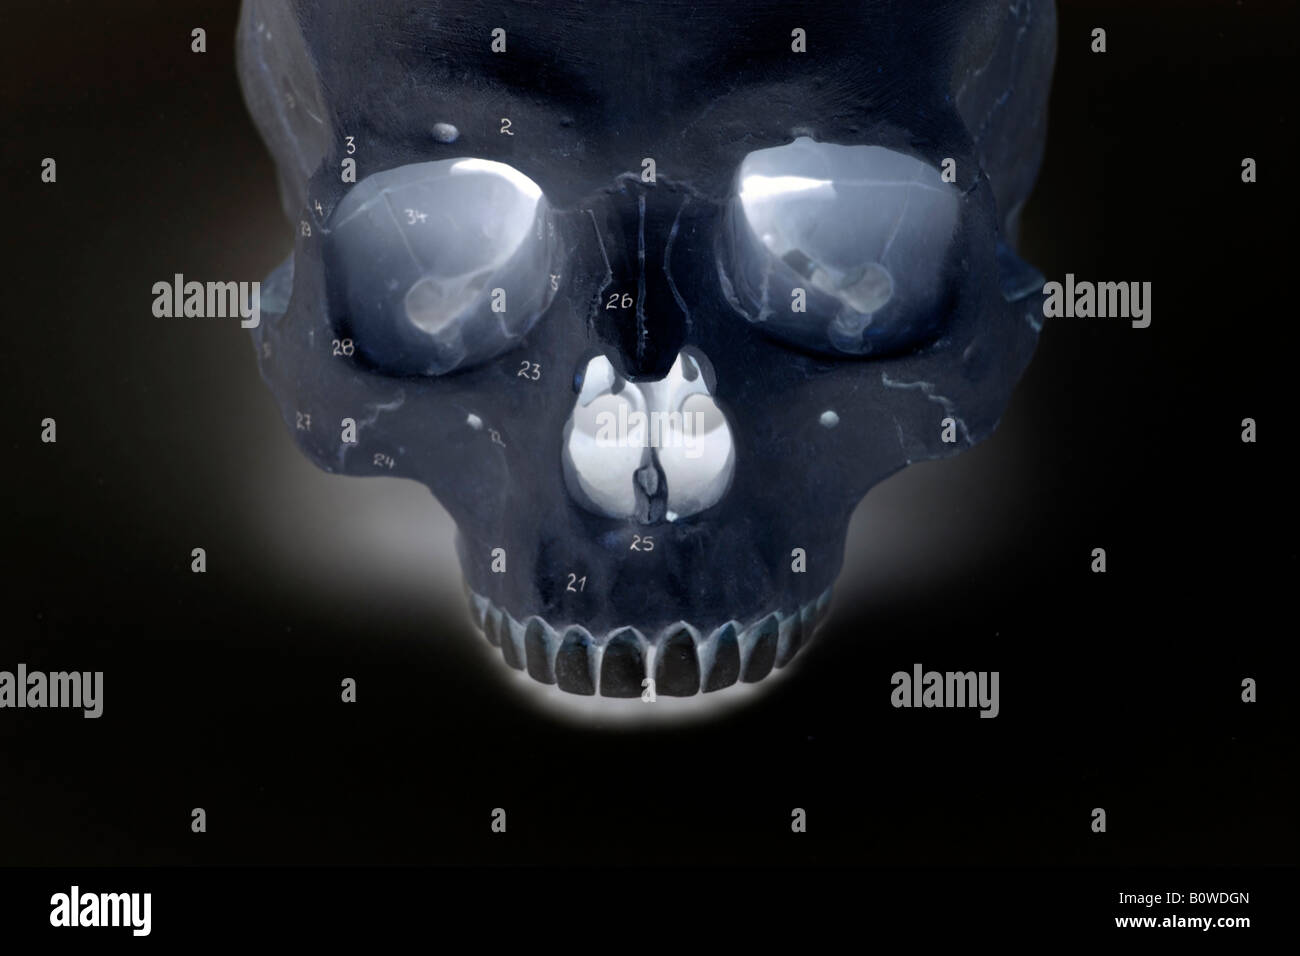 Human skull, X-ray image Stock Photo